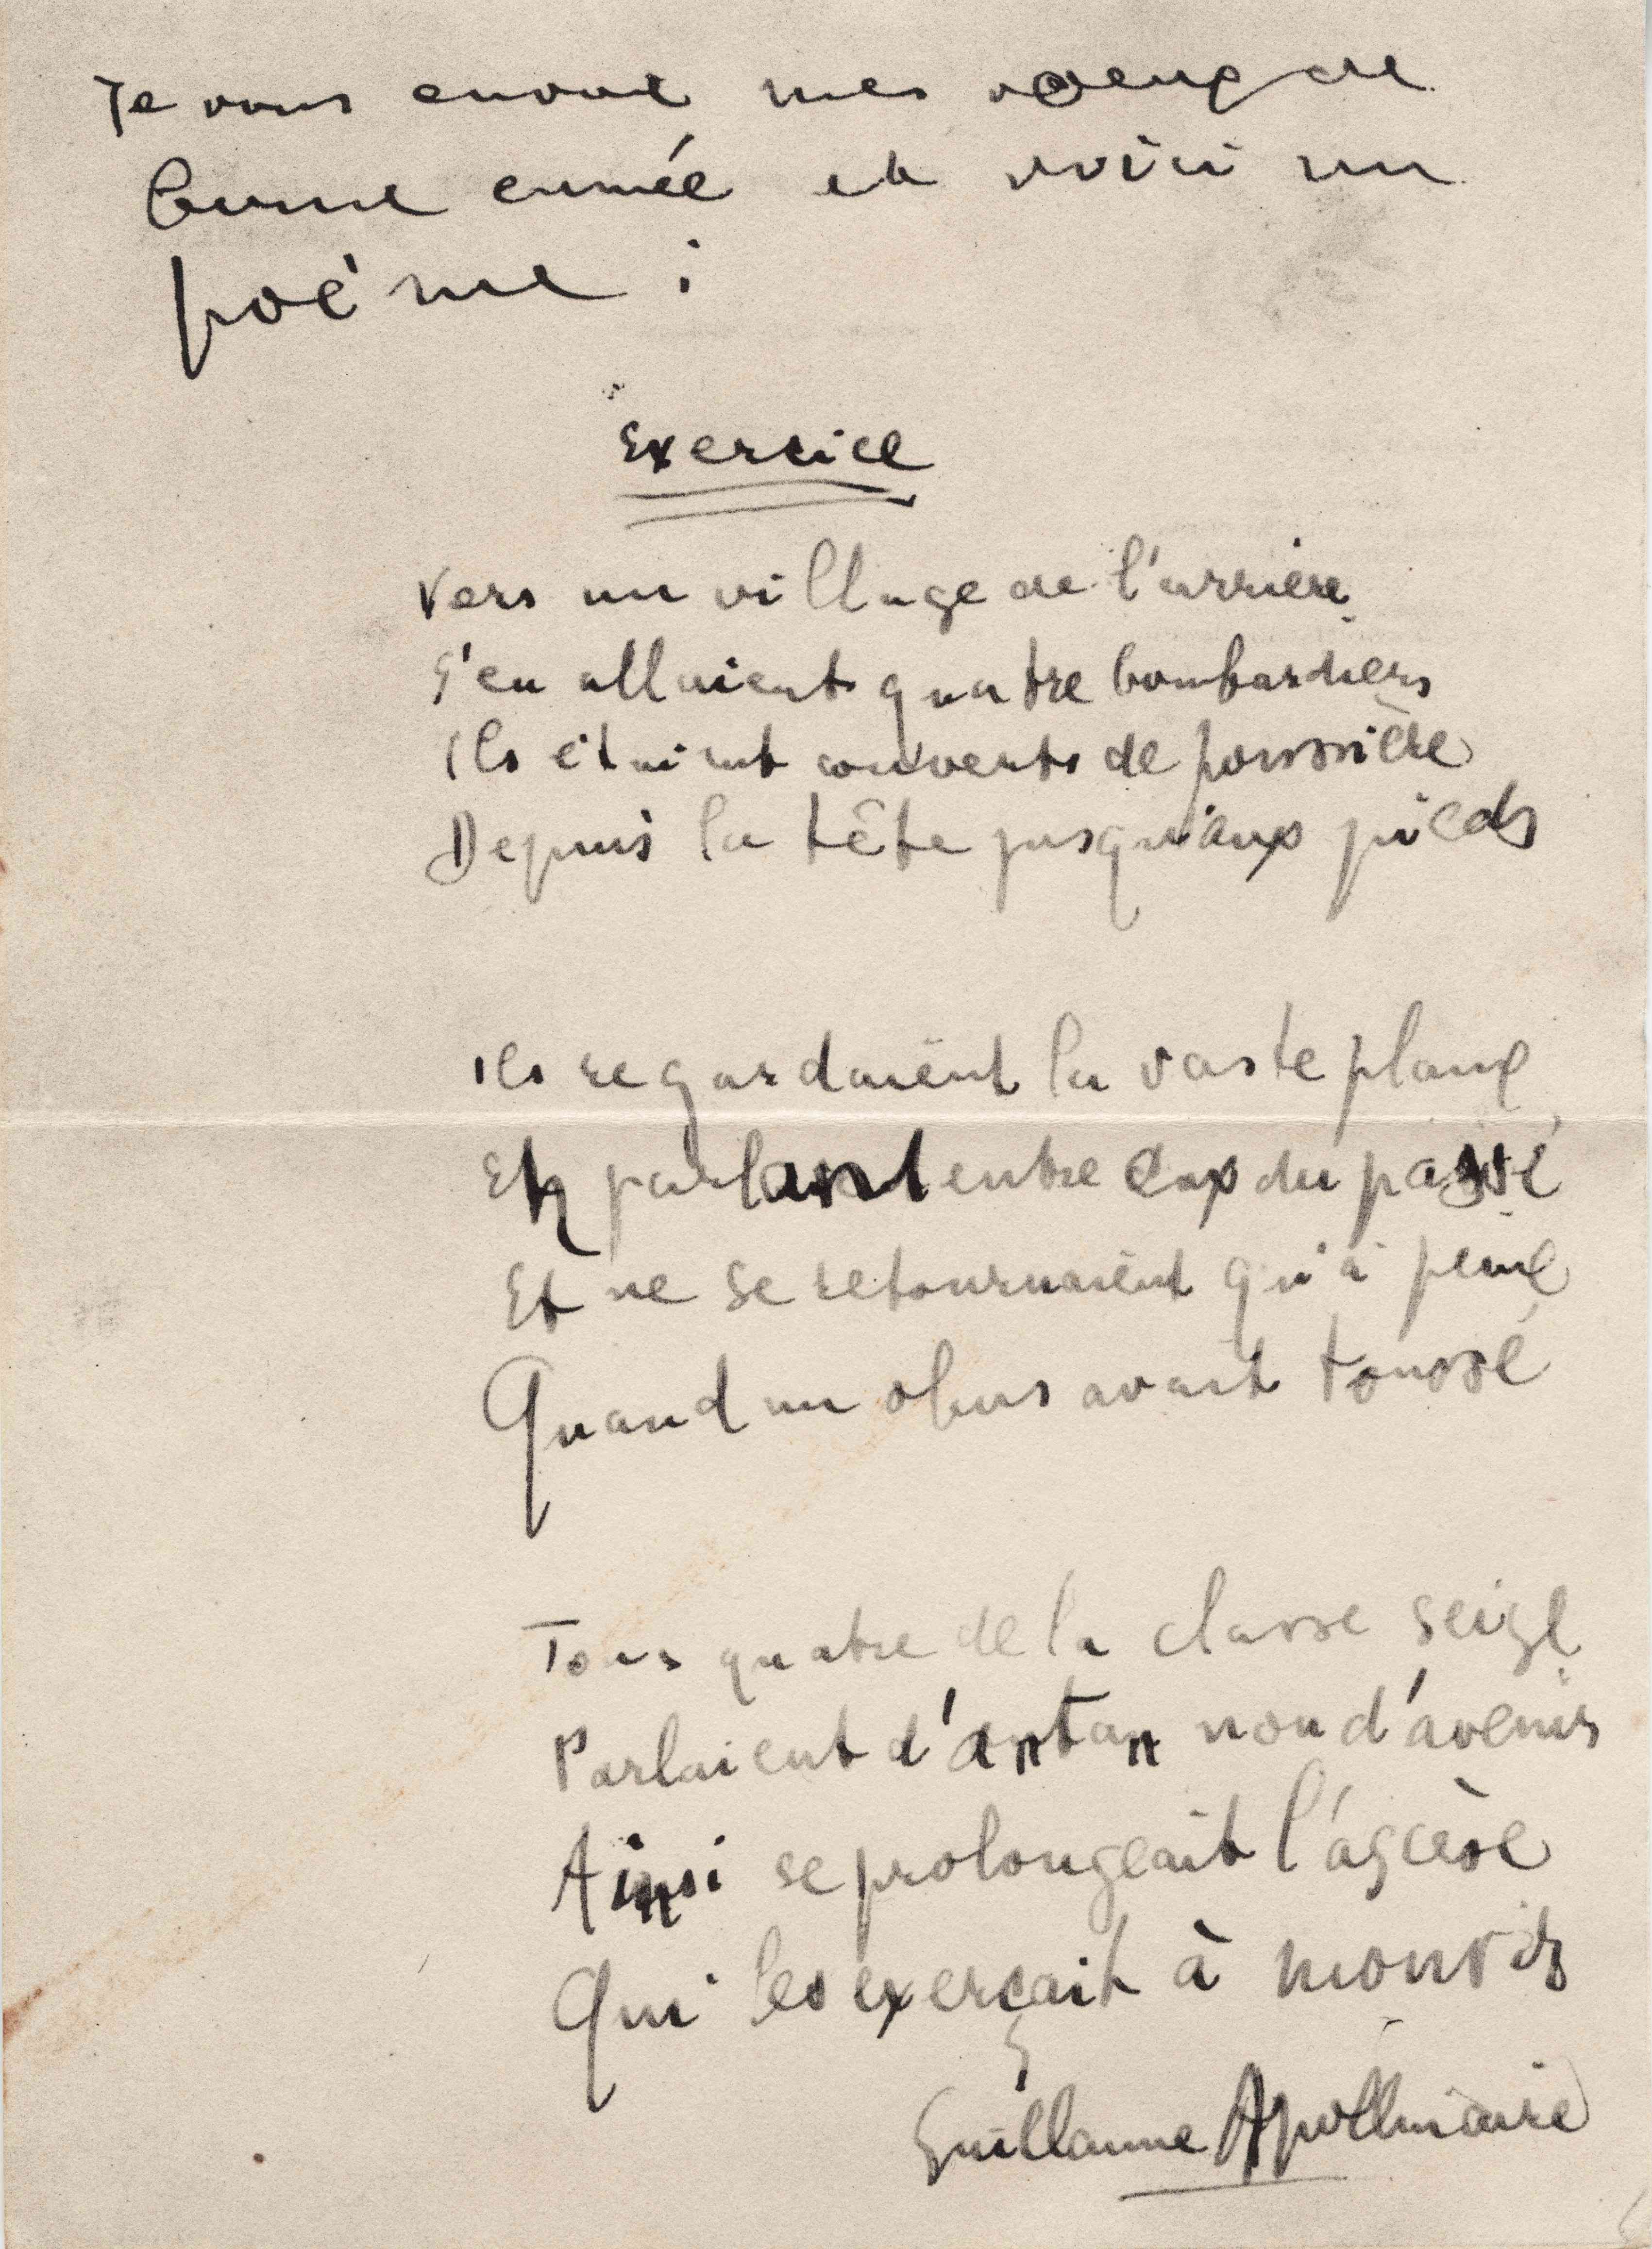 Manoscritto del poema Exercice, di Guillame Apollinaire, scritto per Madeleine Pagès nel 1915.